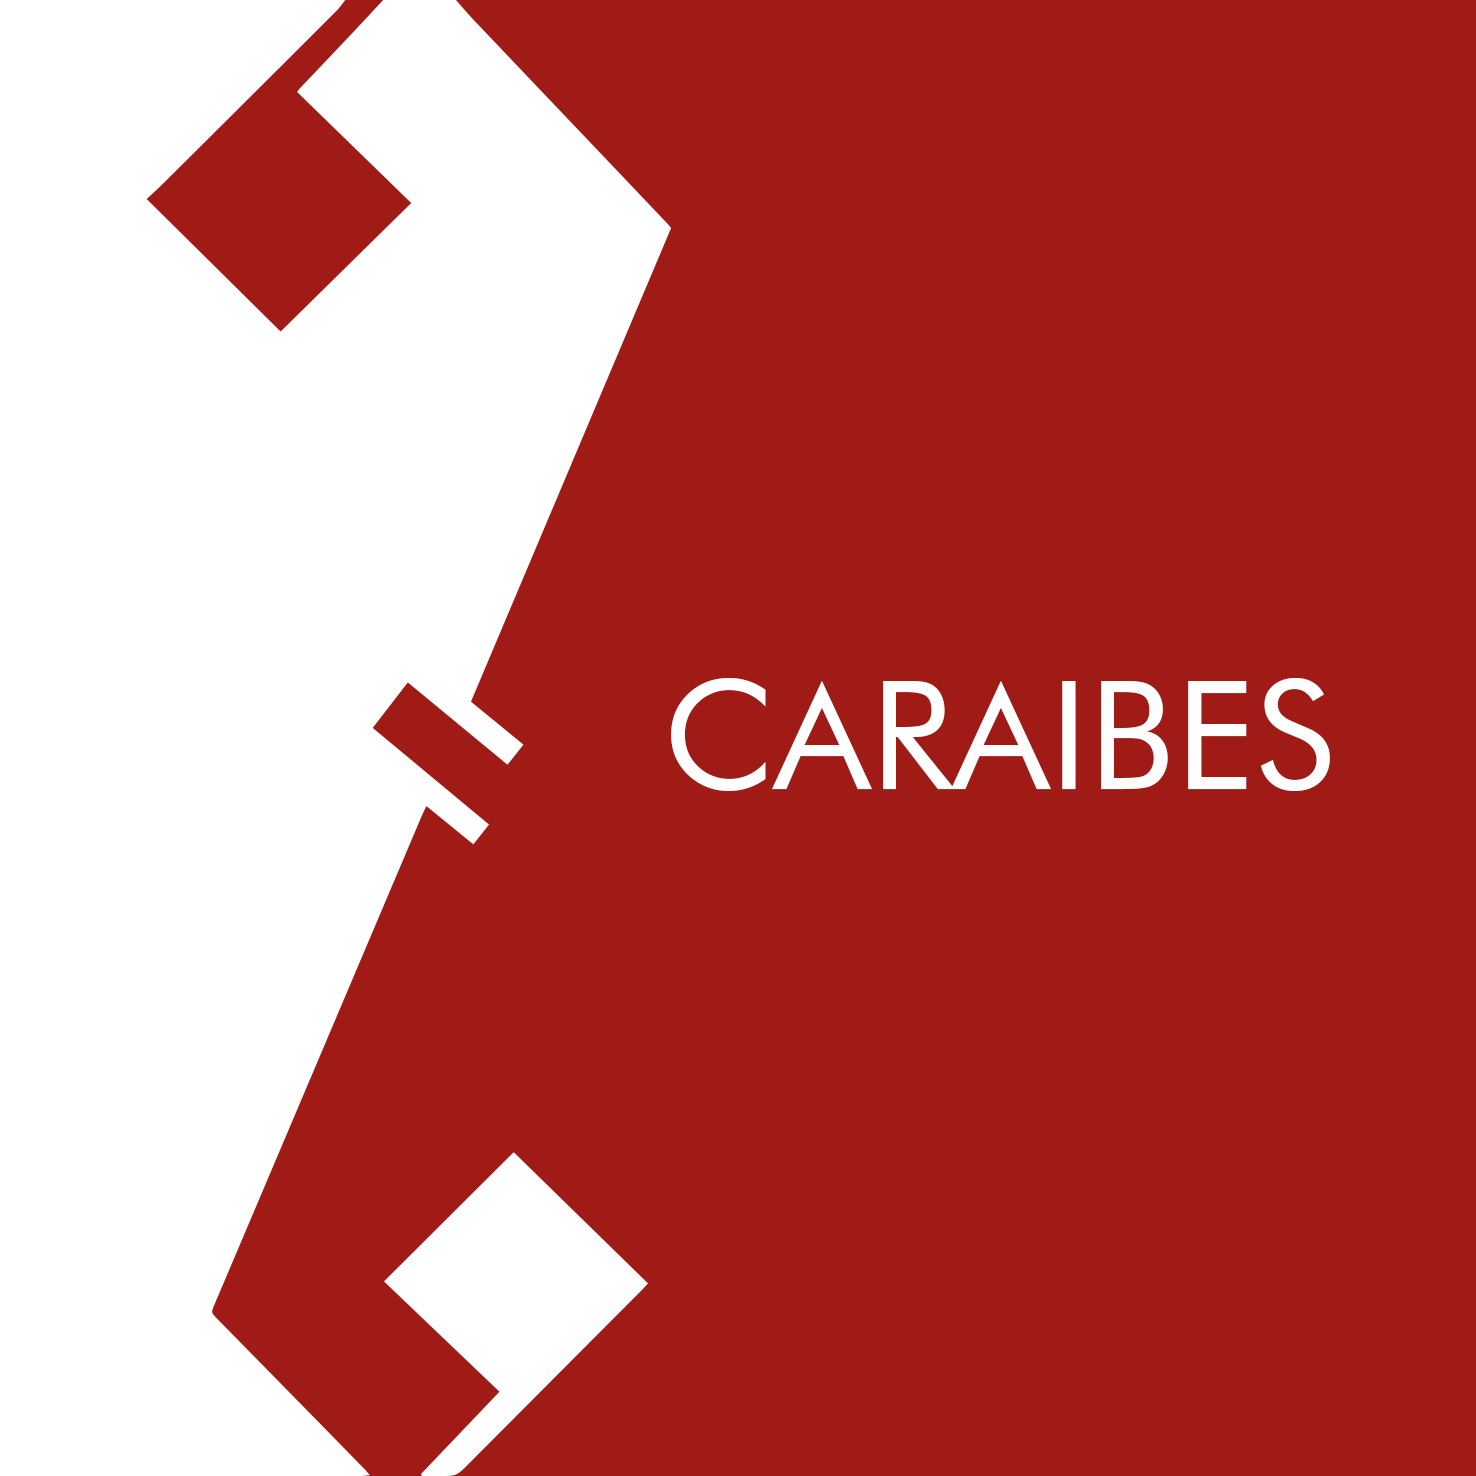 CARAIBES